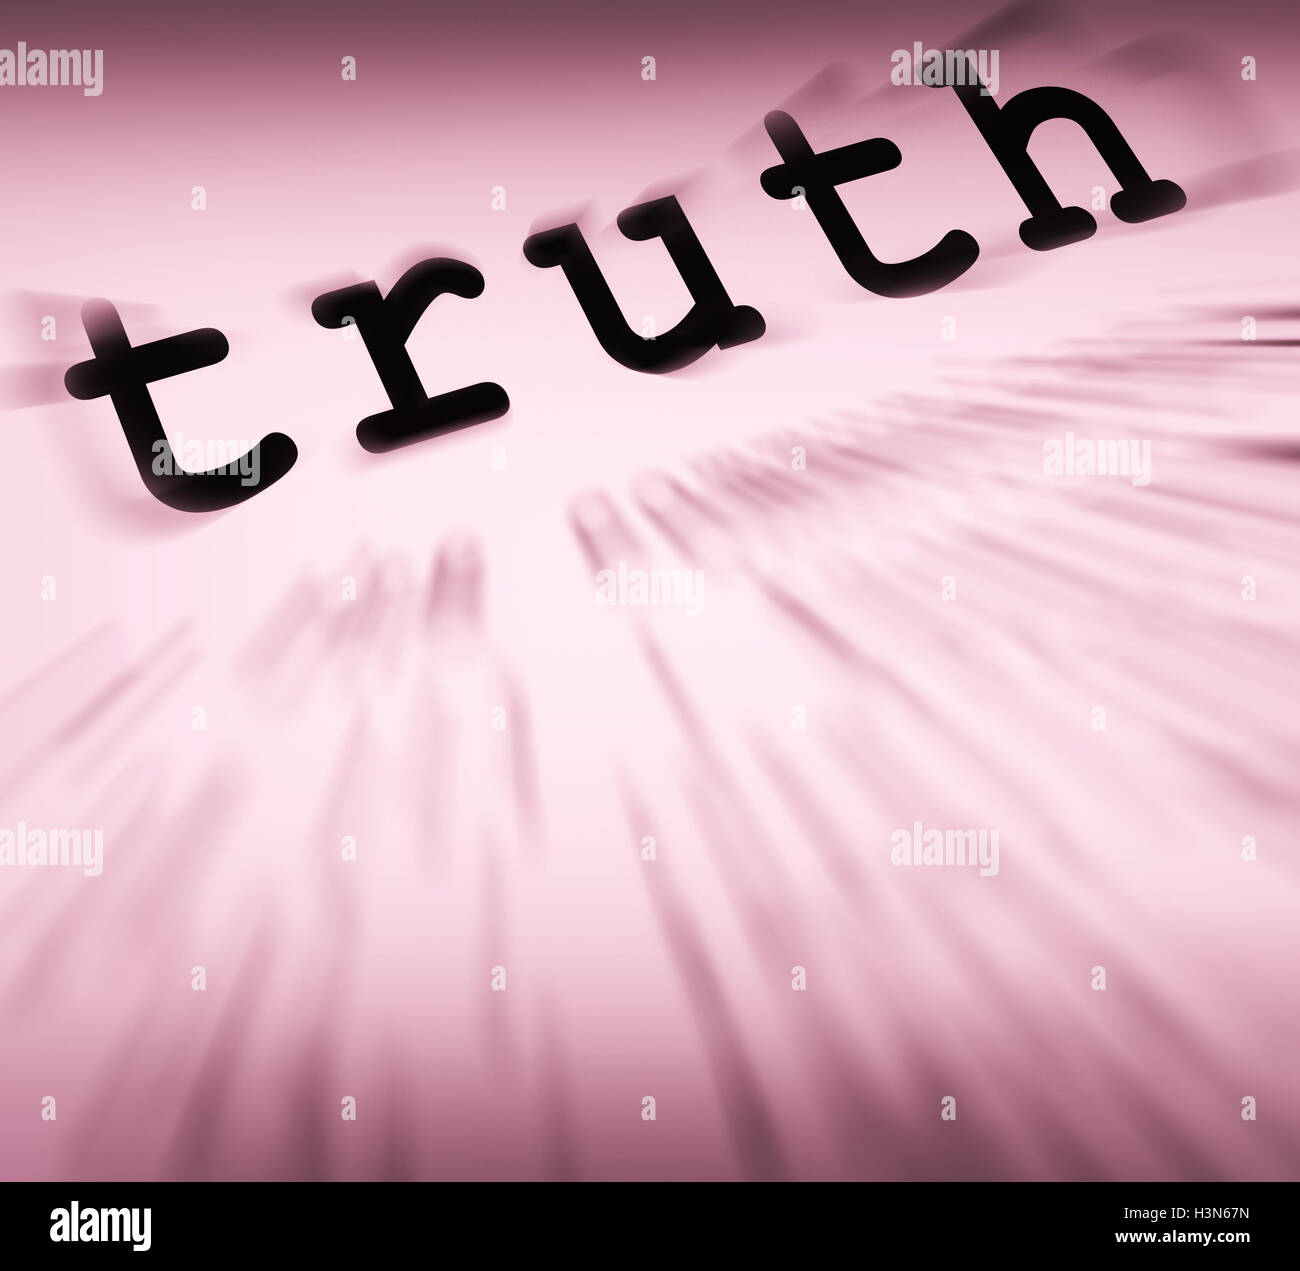 Definizione di verità visualizza la vera onestà o veridicità Foto Stock